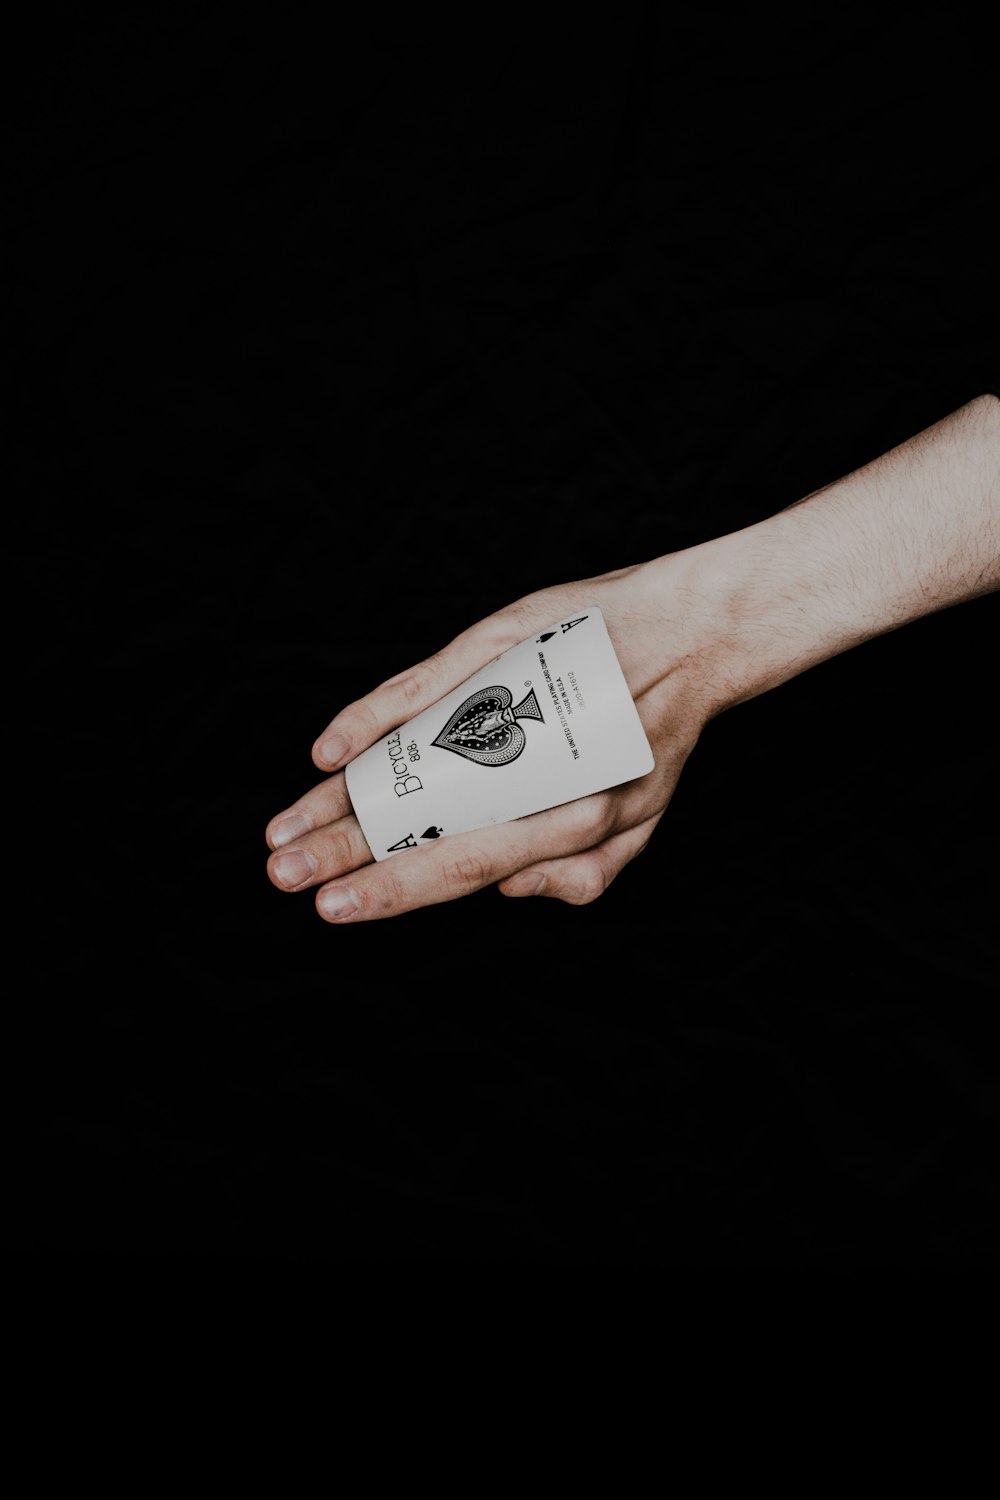 Una persona sosteniendo una tarjeta en la mano